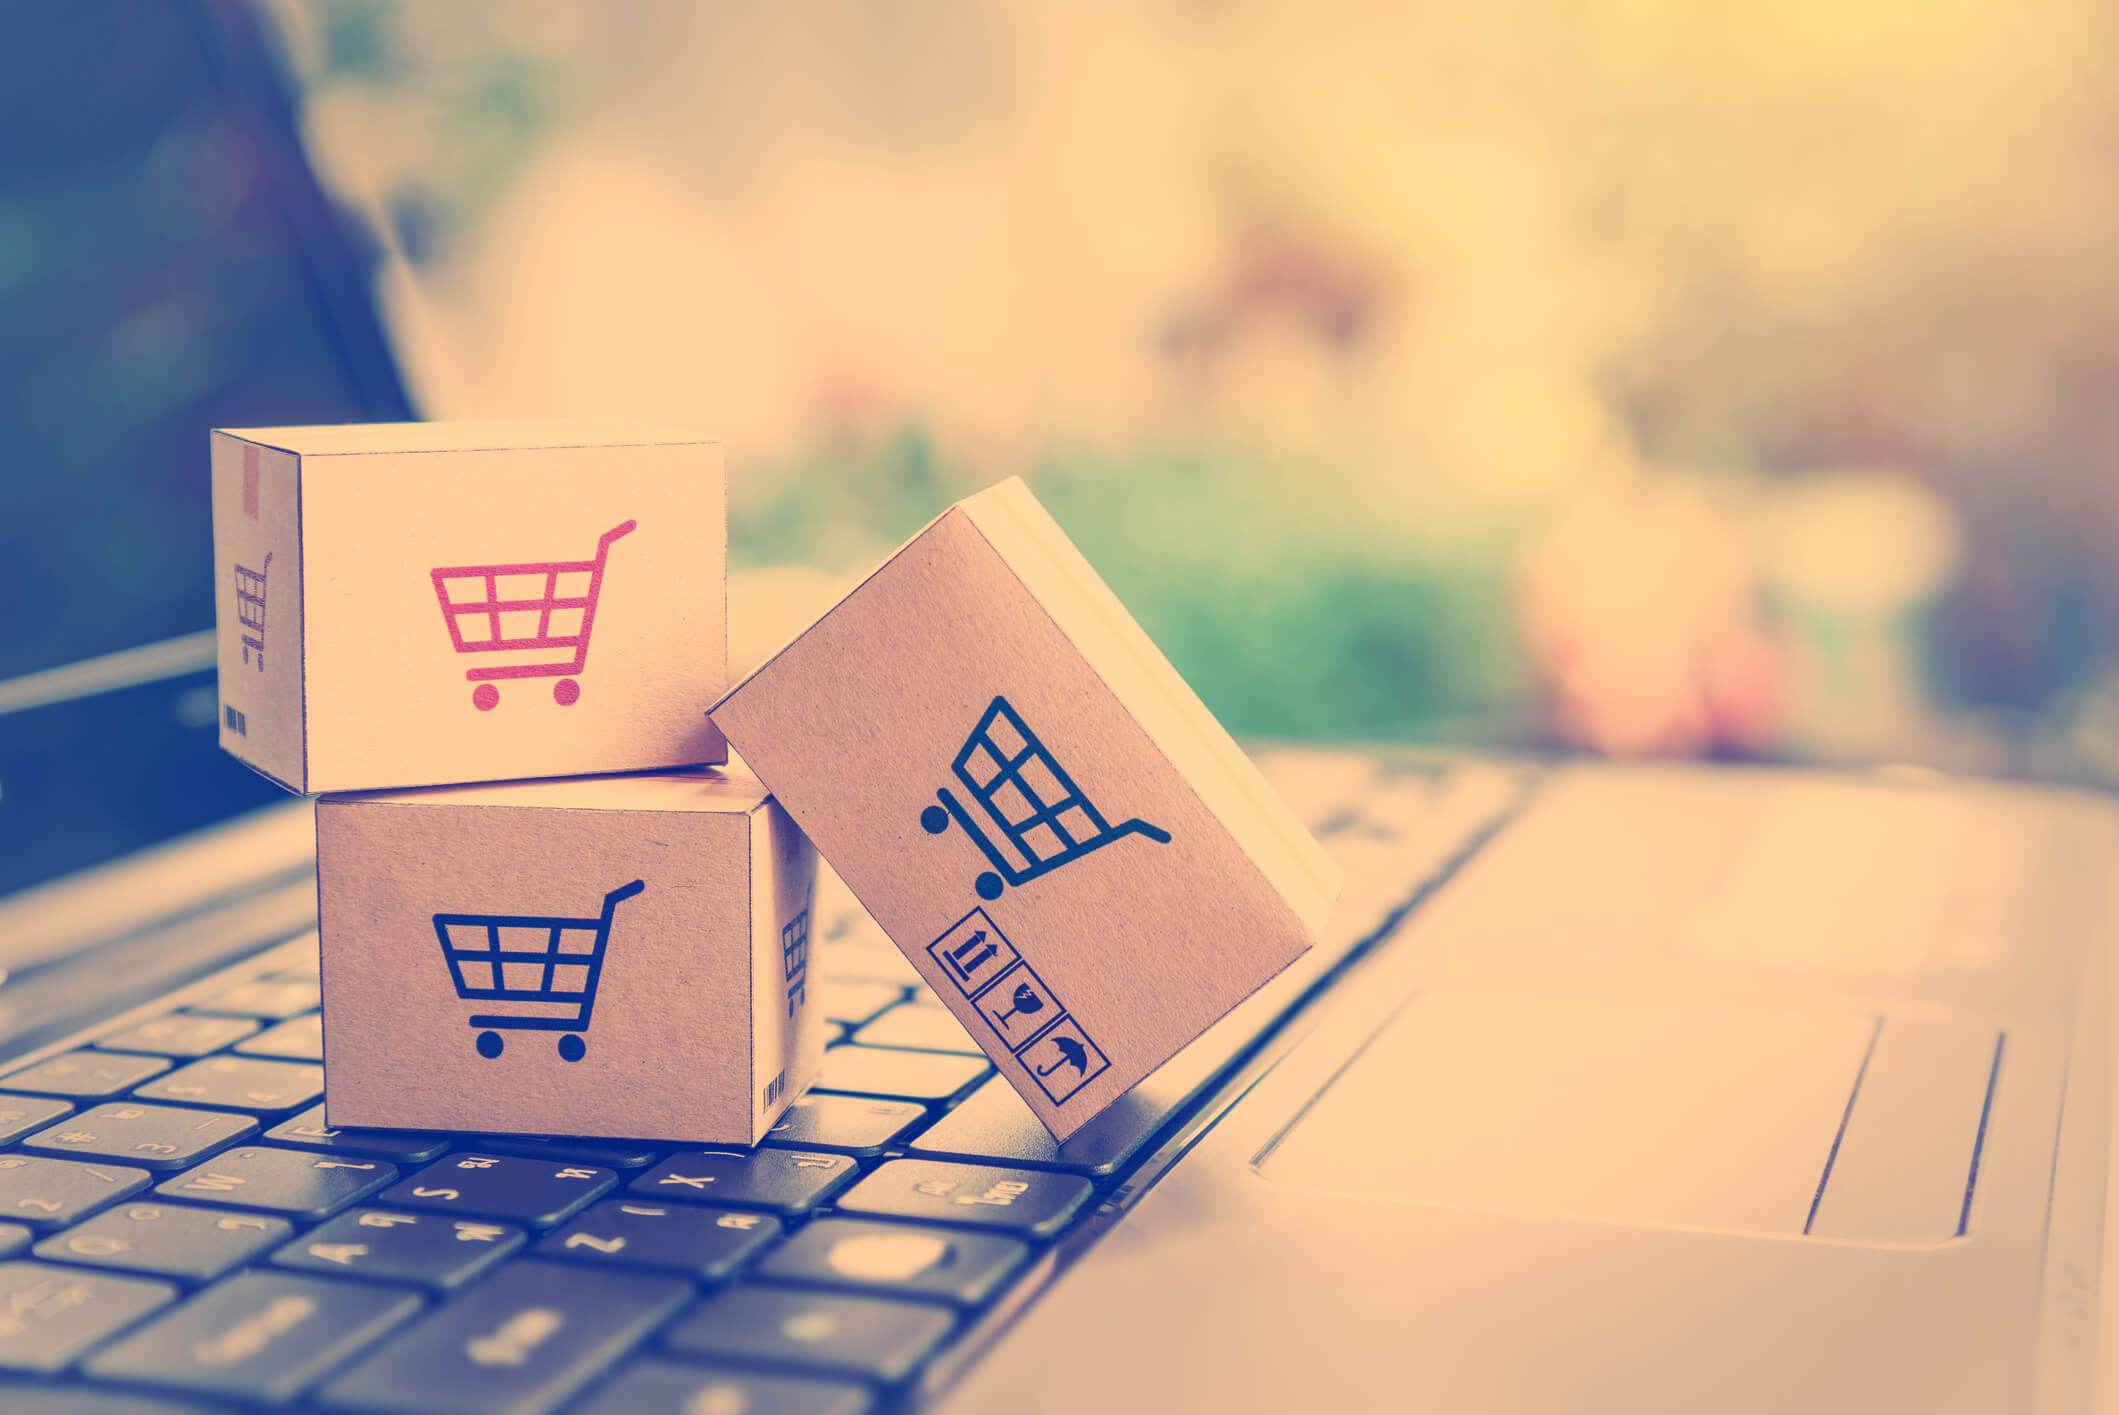 La importancia del e-Commerce para acceder a productos y servicios desde el hogar